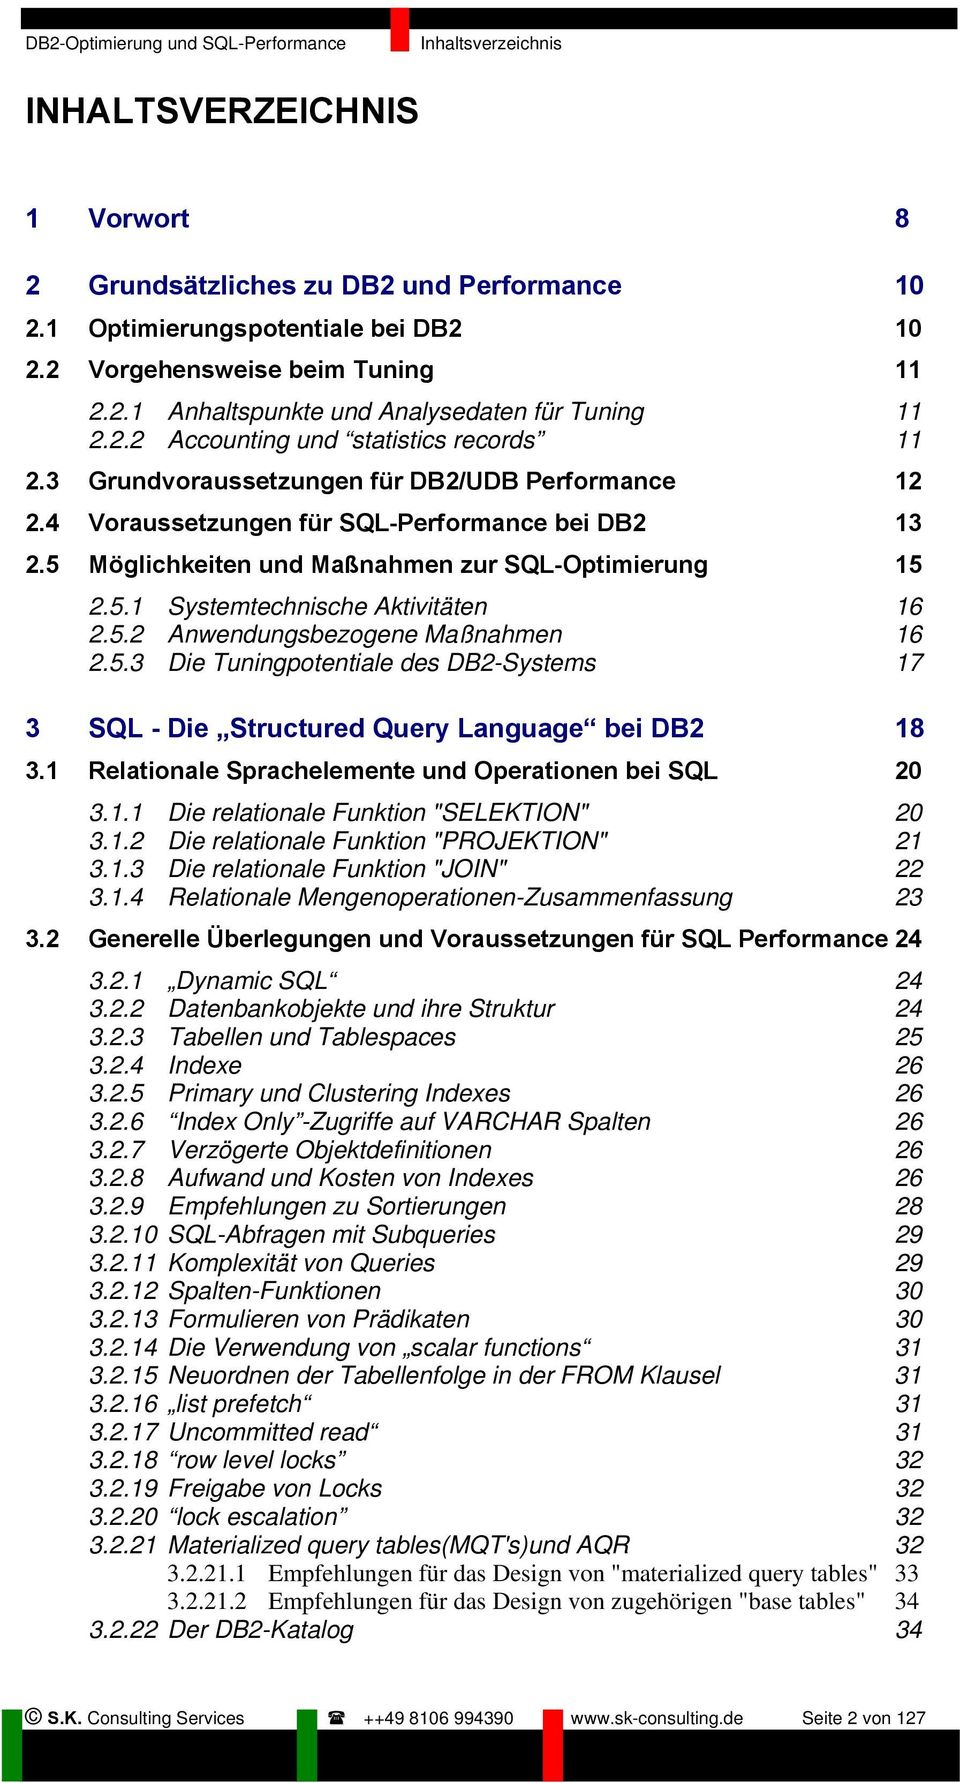 5 Möglichkeiten und Maßnahmen zur SQL-Optimierung 15 2.5.1 Systemtechnische Aktivitäten 16 2.5.2 Anwendungsbezogene Maßnahmen 16 2.5.3 Die Tuningpotentiale des DB2-Systems 17 3 SQL - Die Structured Query Language bei DB2 18 3.